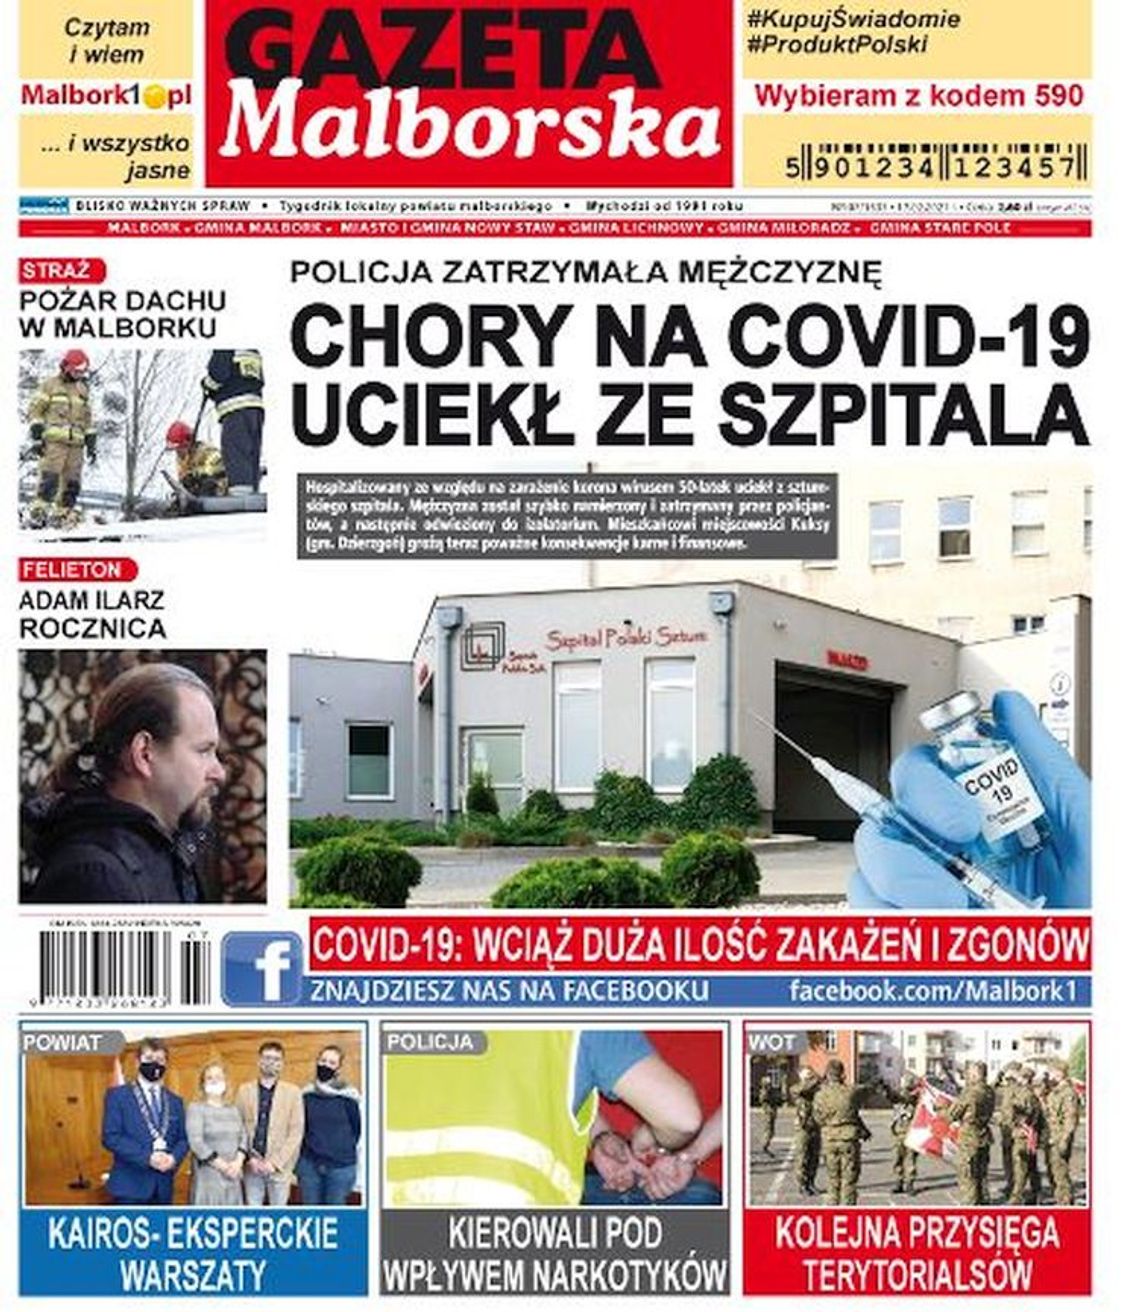 Najnowszy numer Gazety Malborskiej już w sprzedaży! Świeże wiadomości z Malborka i okolicznych gmin już w Twoim kiosku! Co w środku?